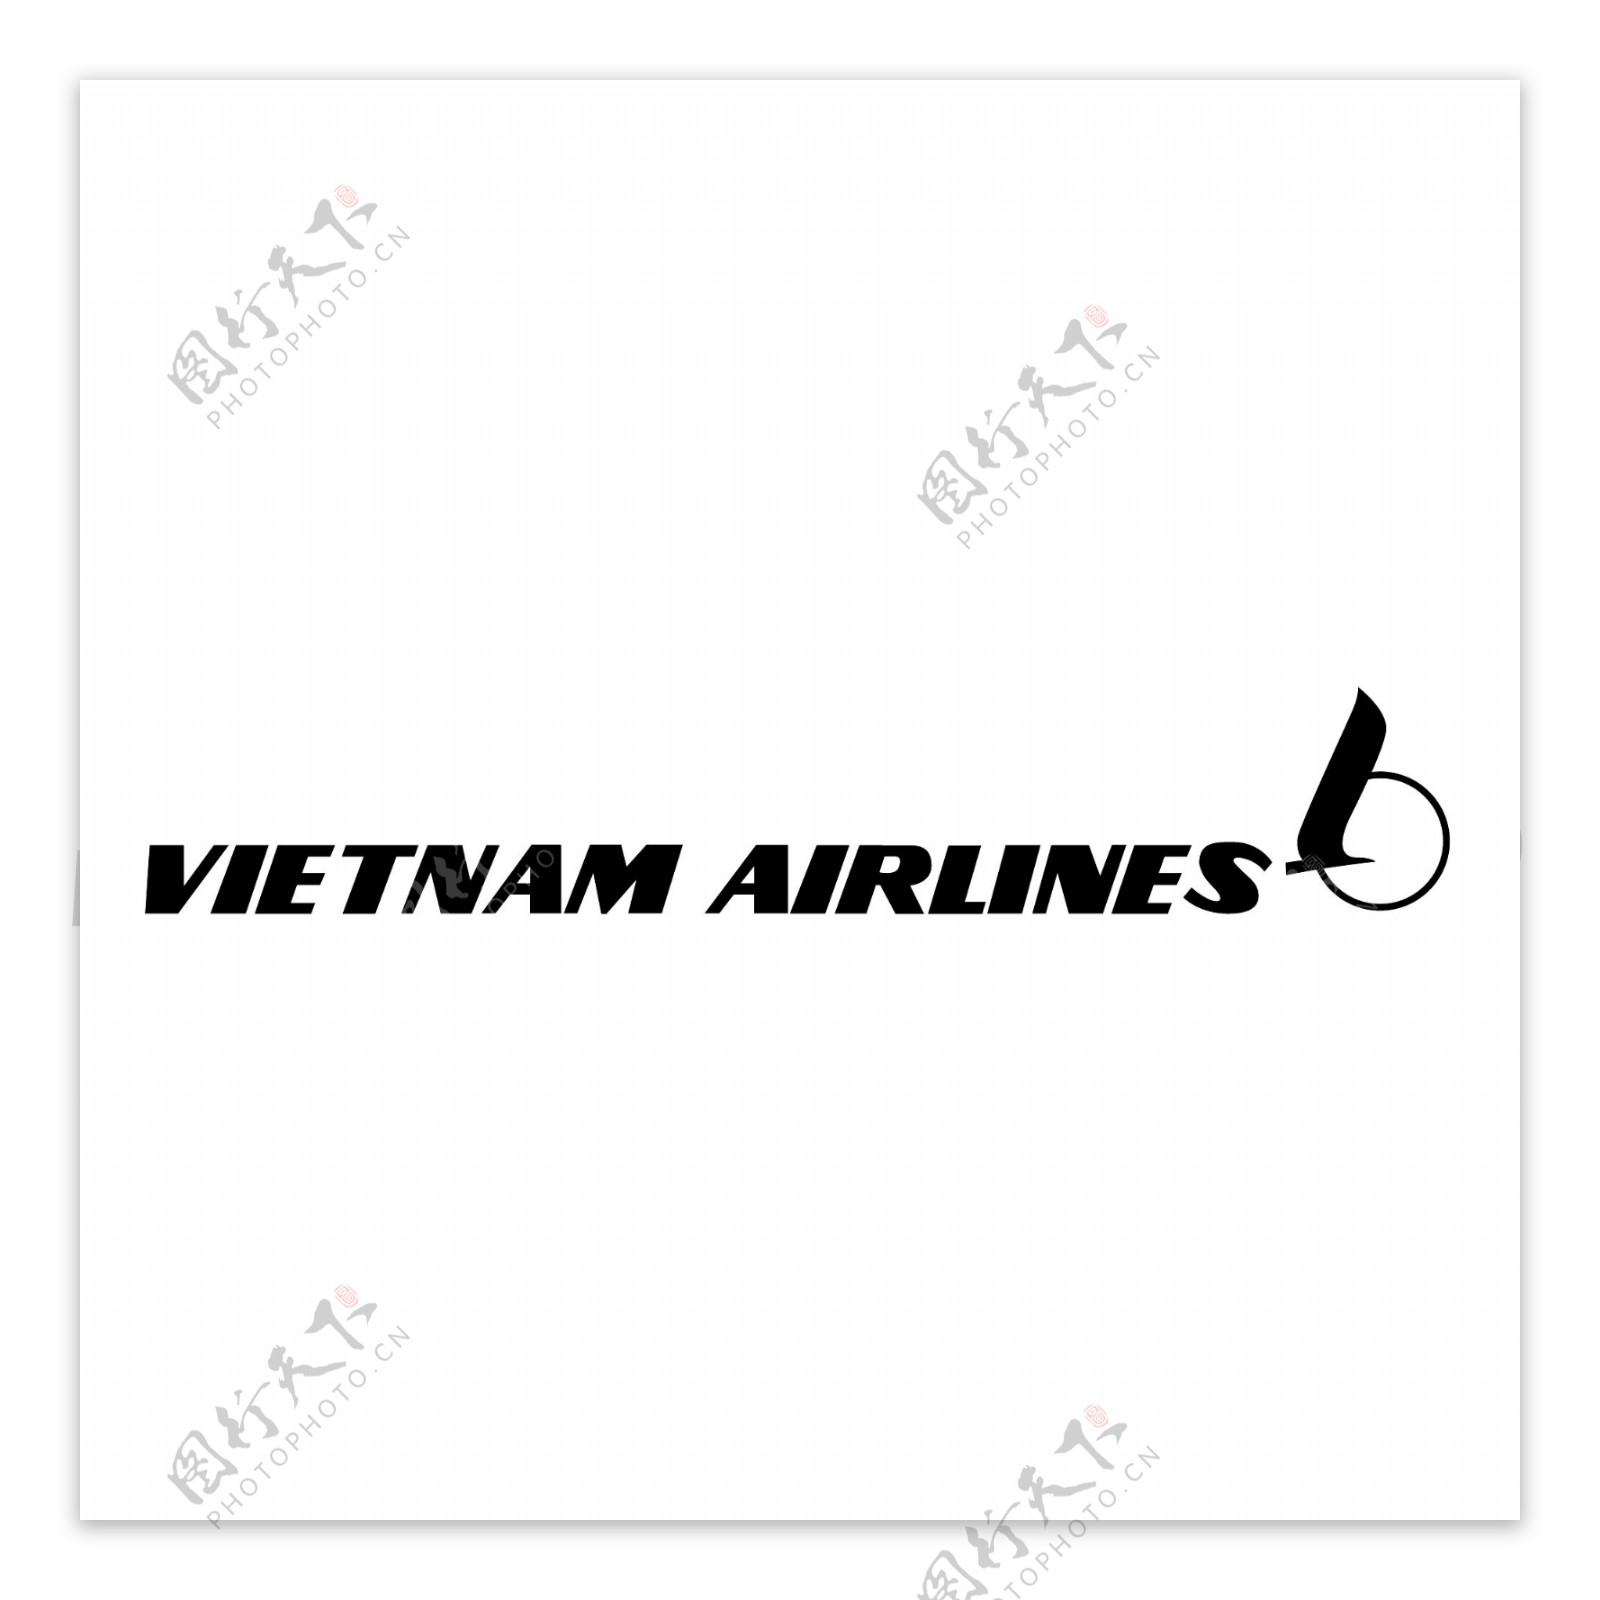 越南航空公司0